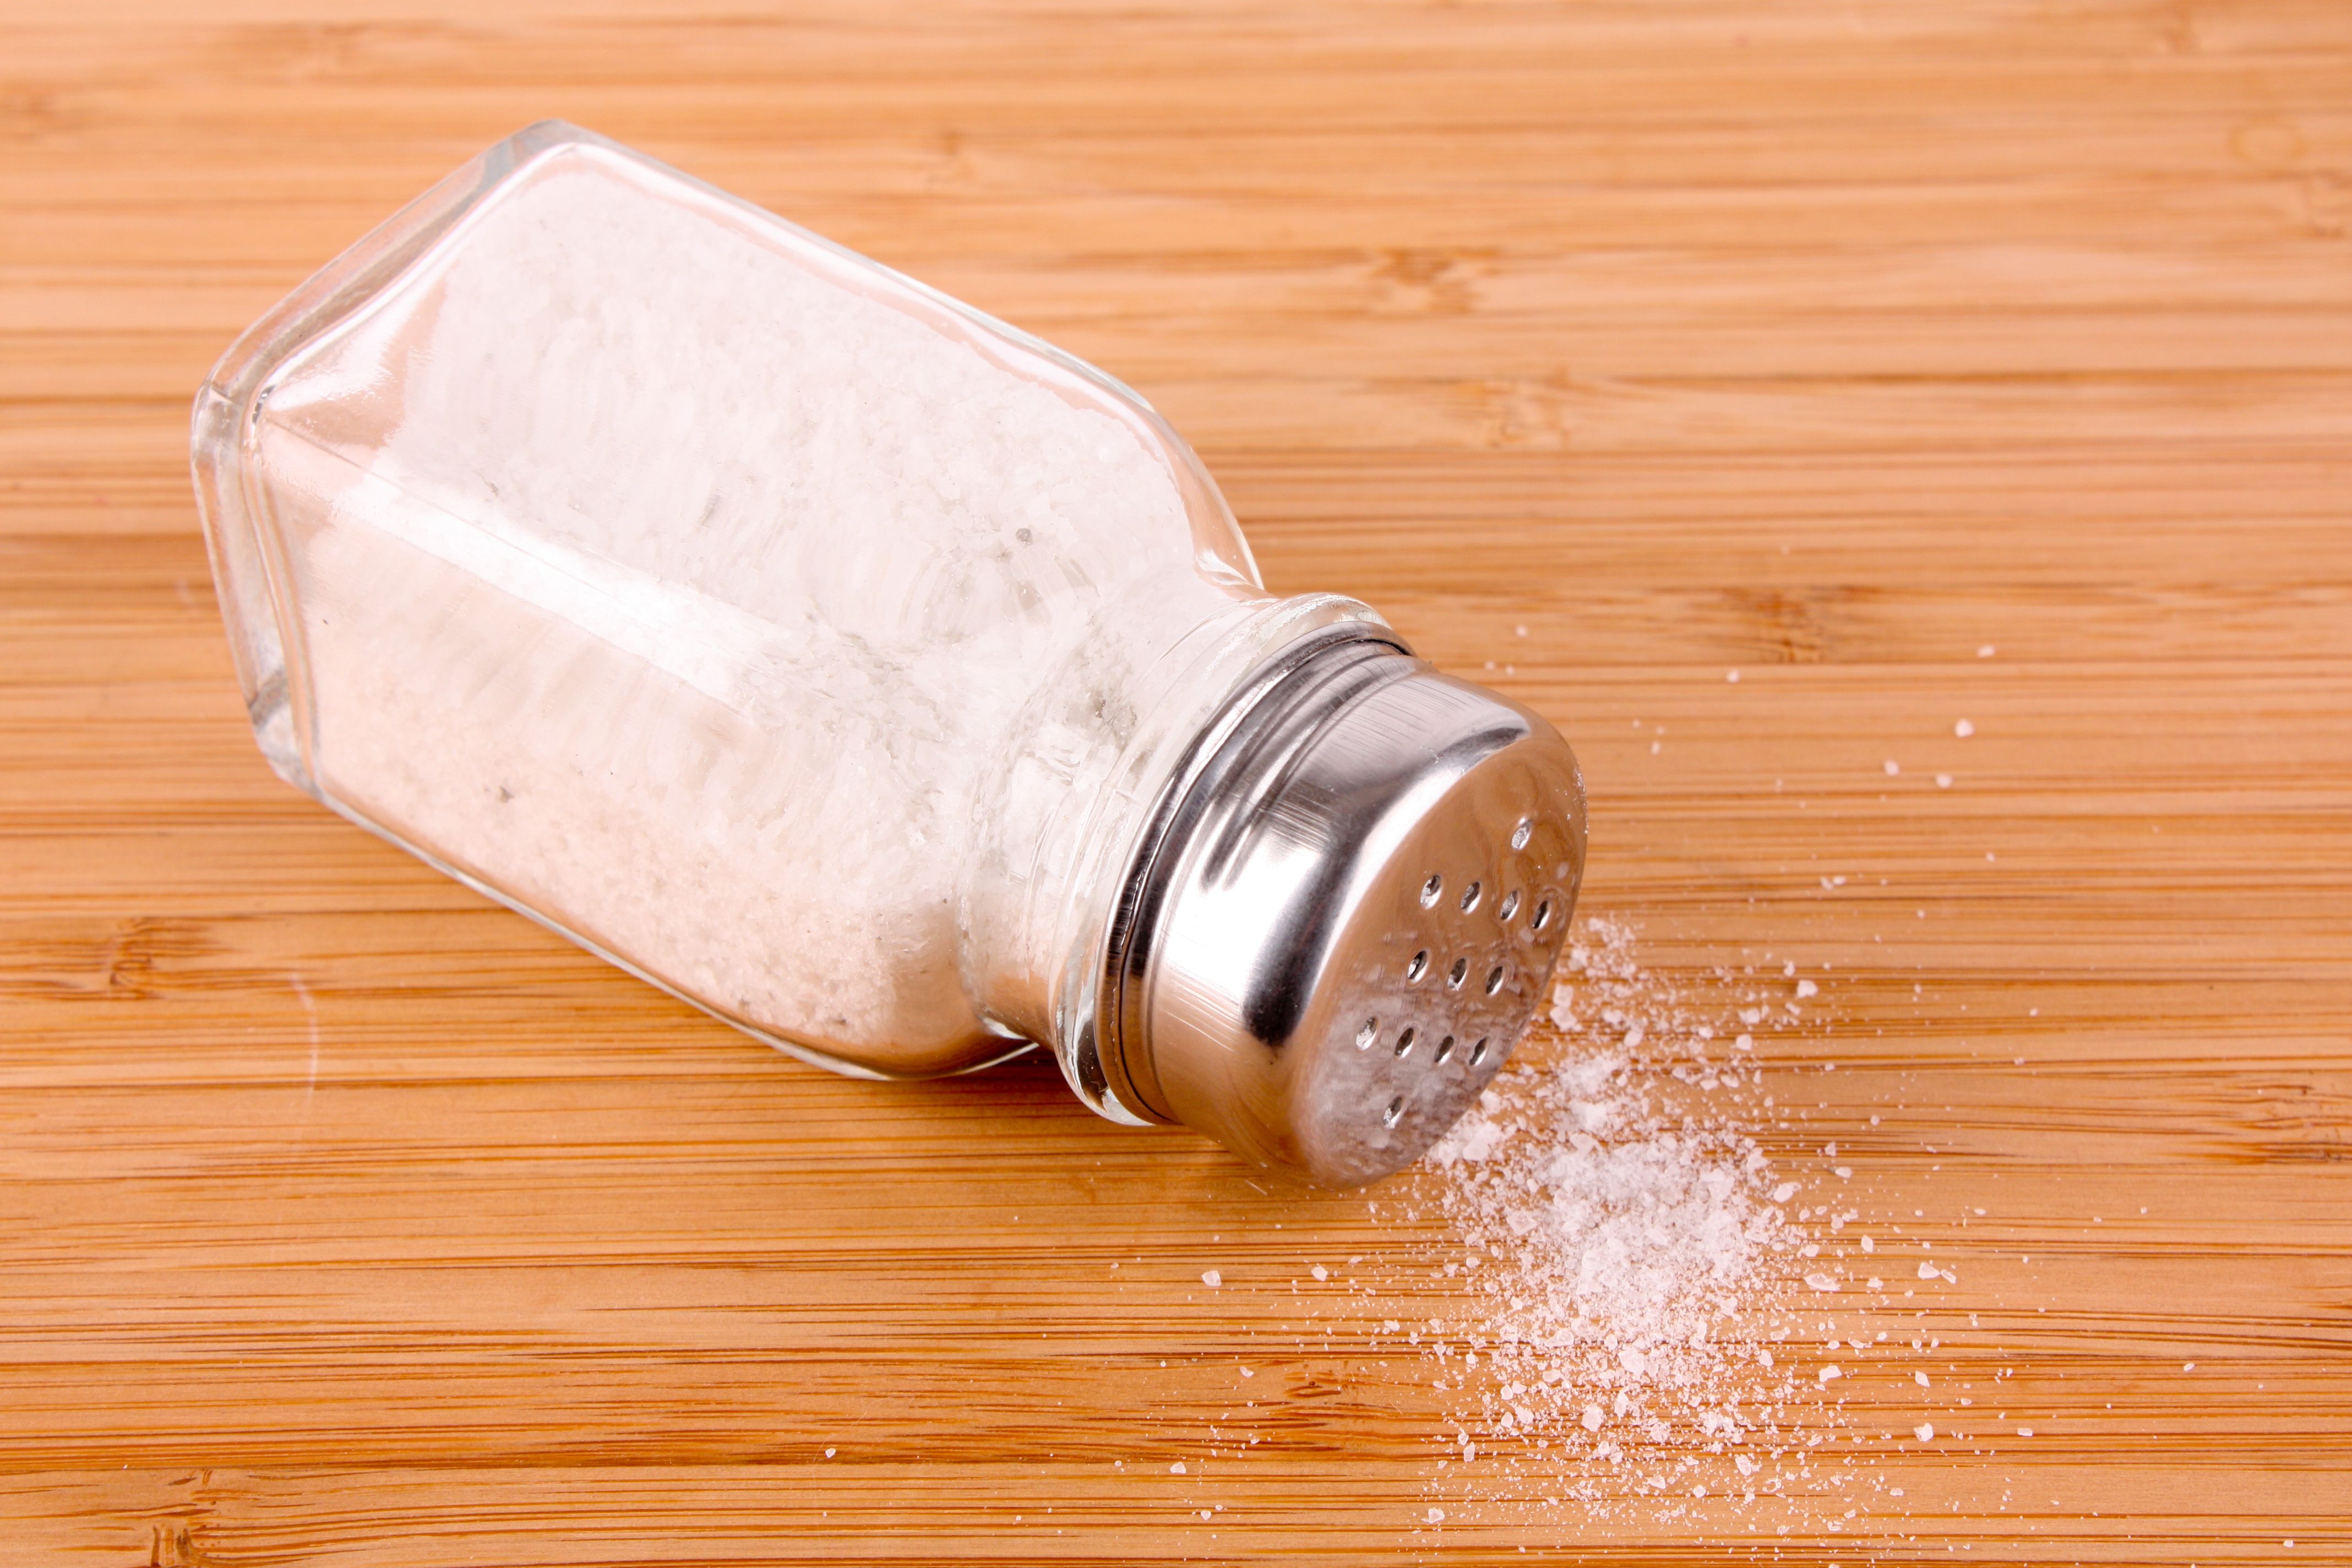 La sal favorece la retención de líquidos (bigstock)